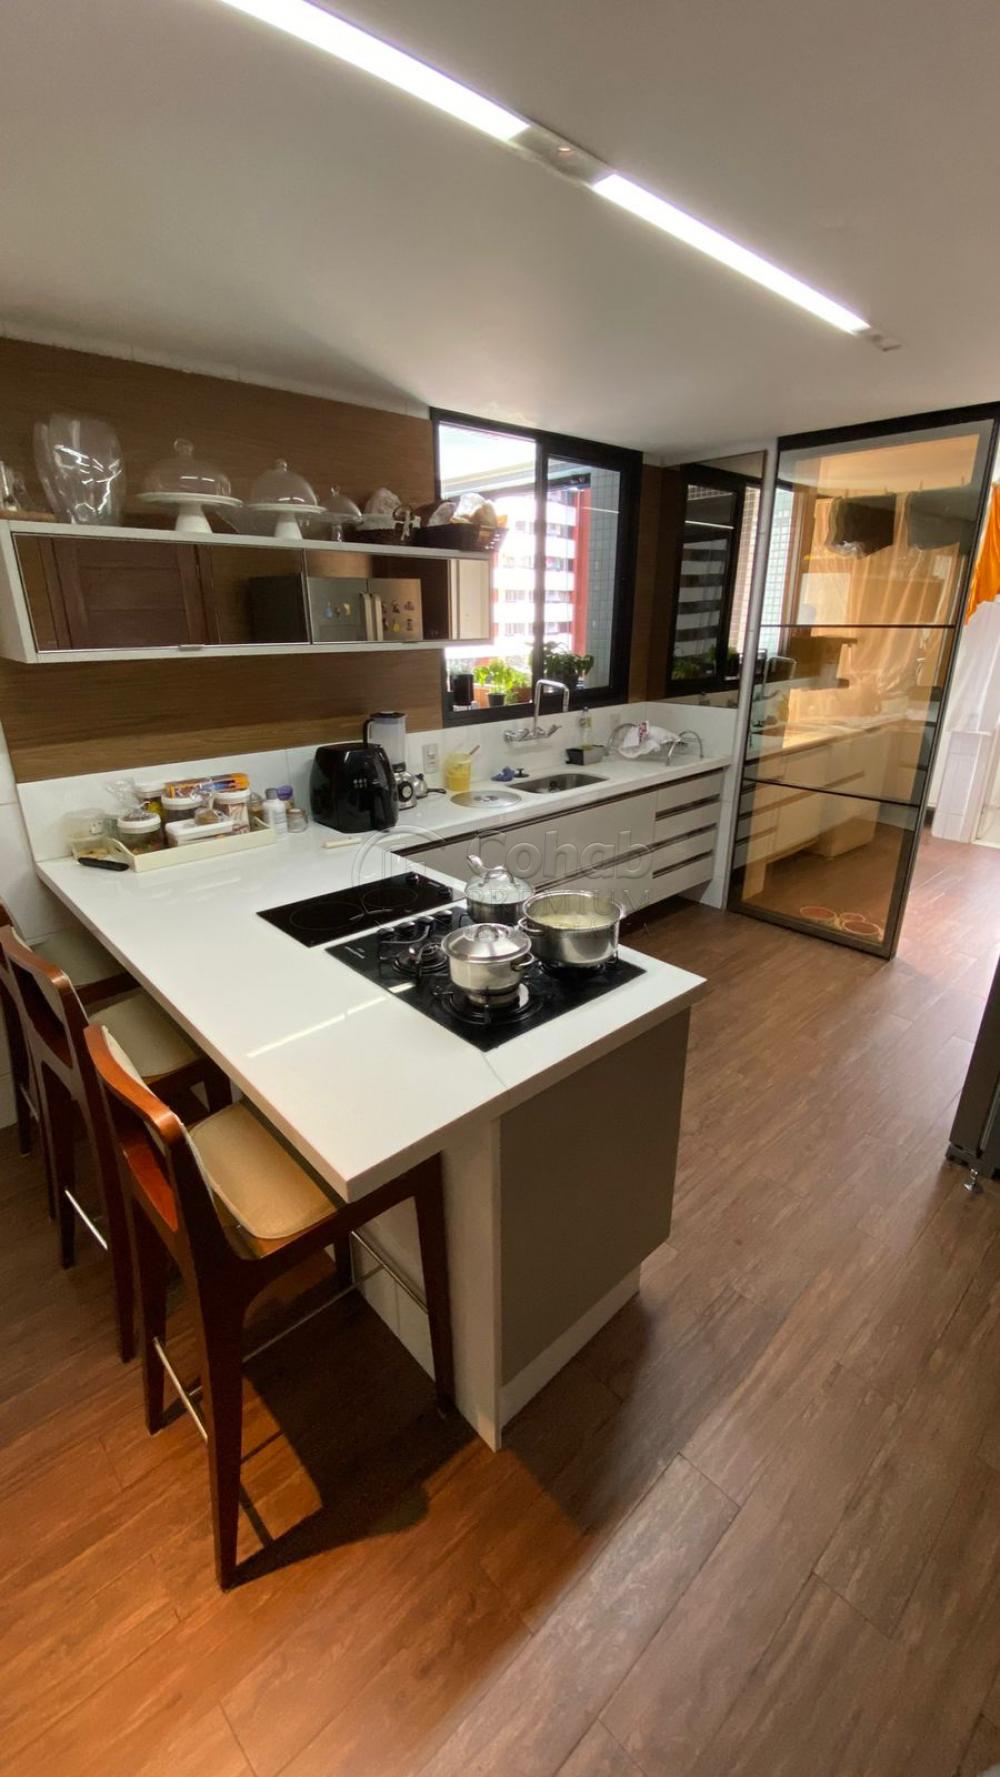 Comprar Apartamento / Padrão em Aracaju R$ 1.800.000,00 - Foto 9